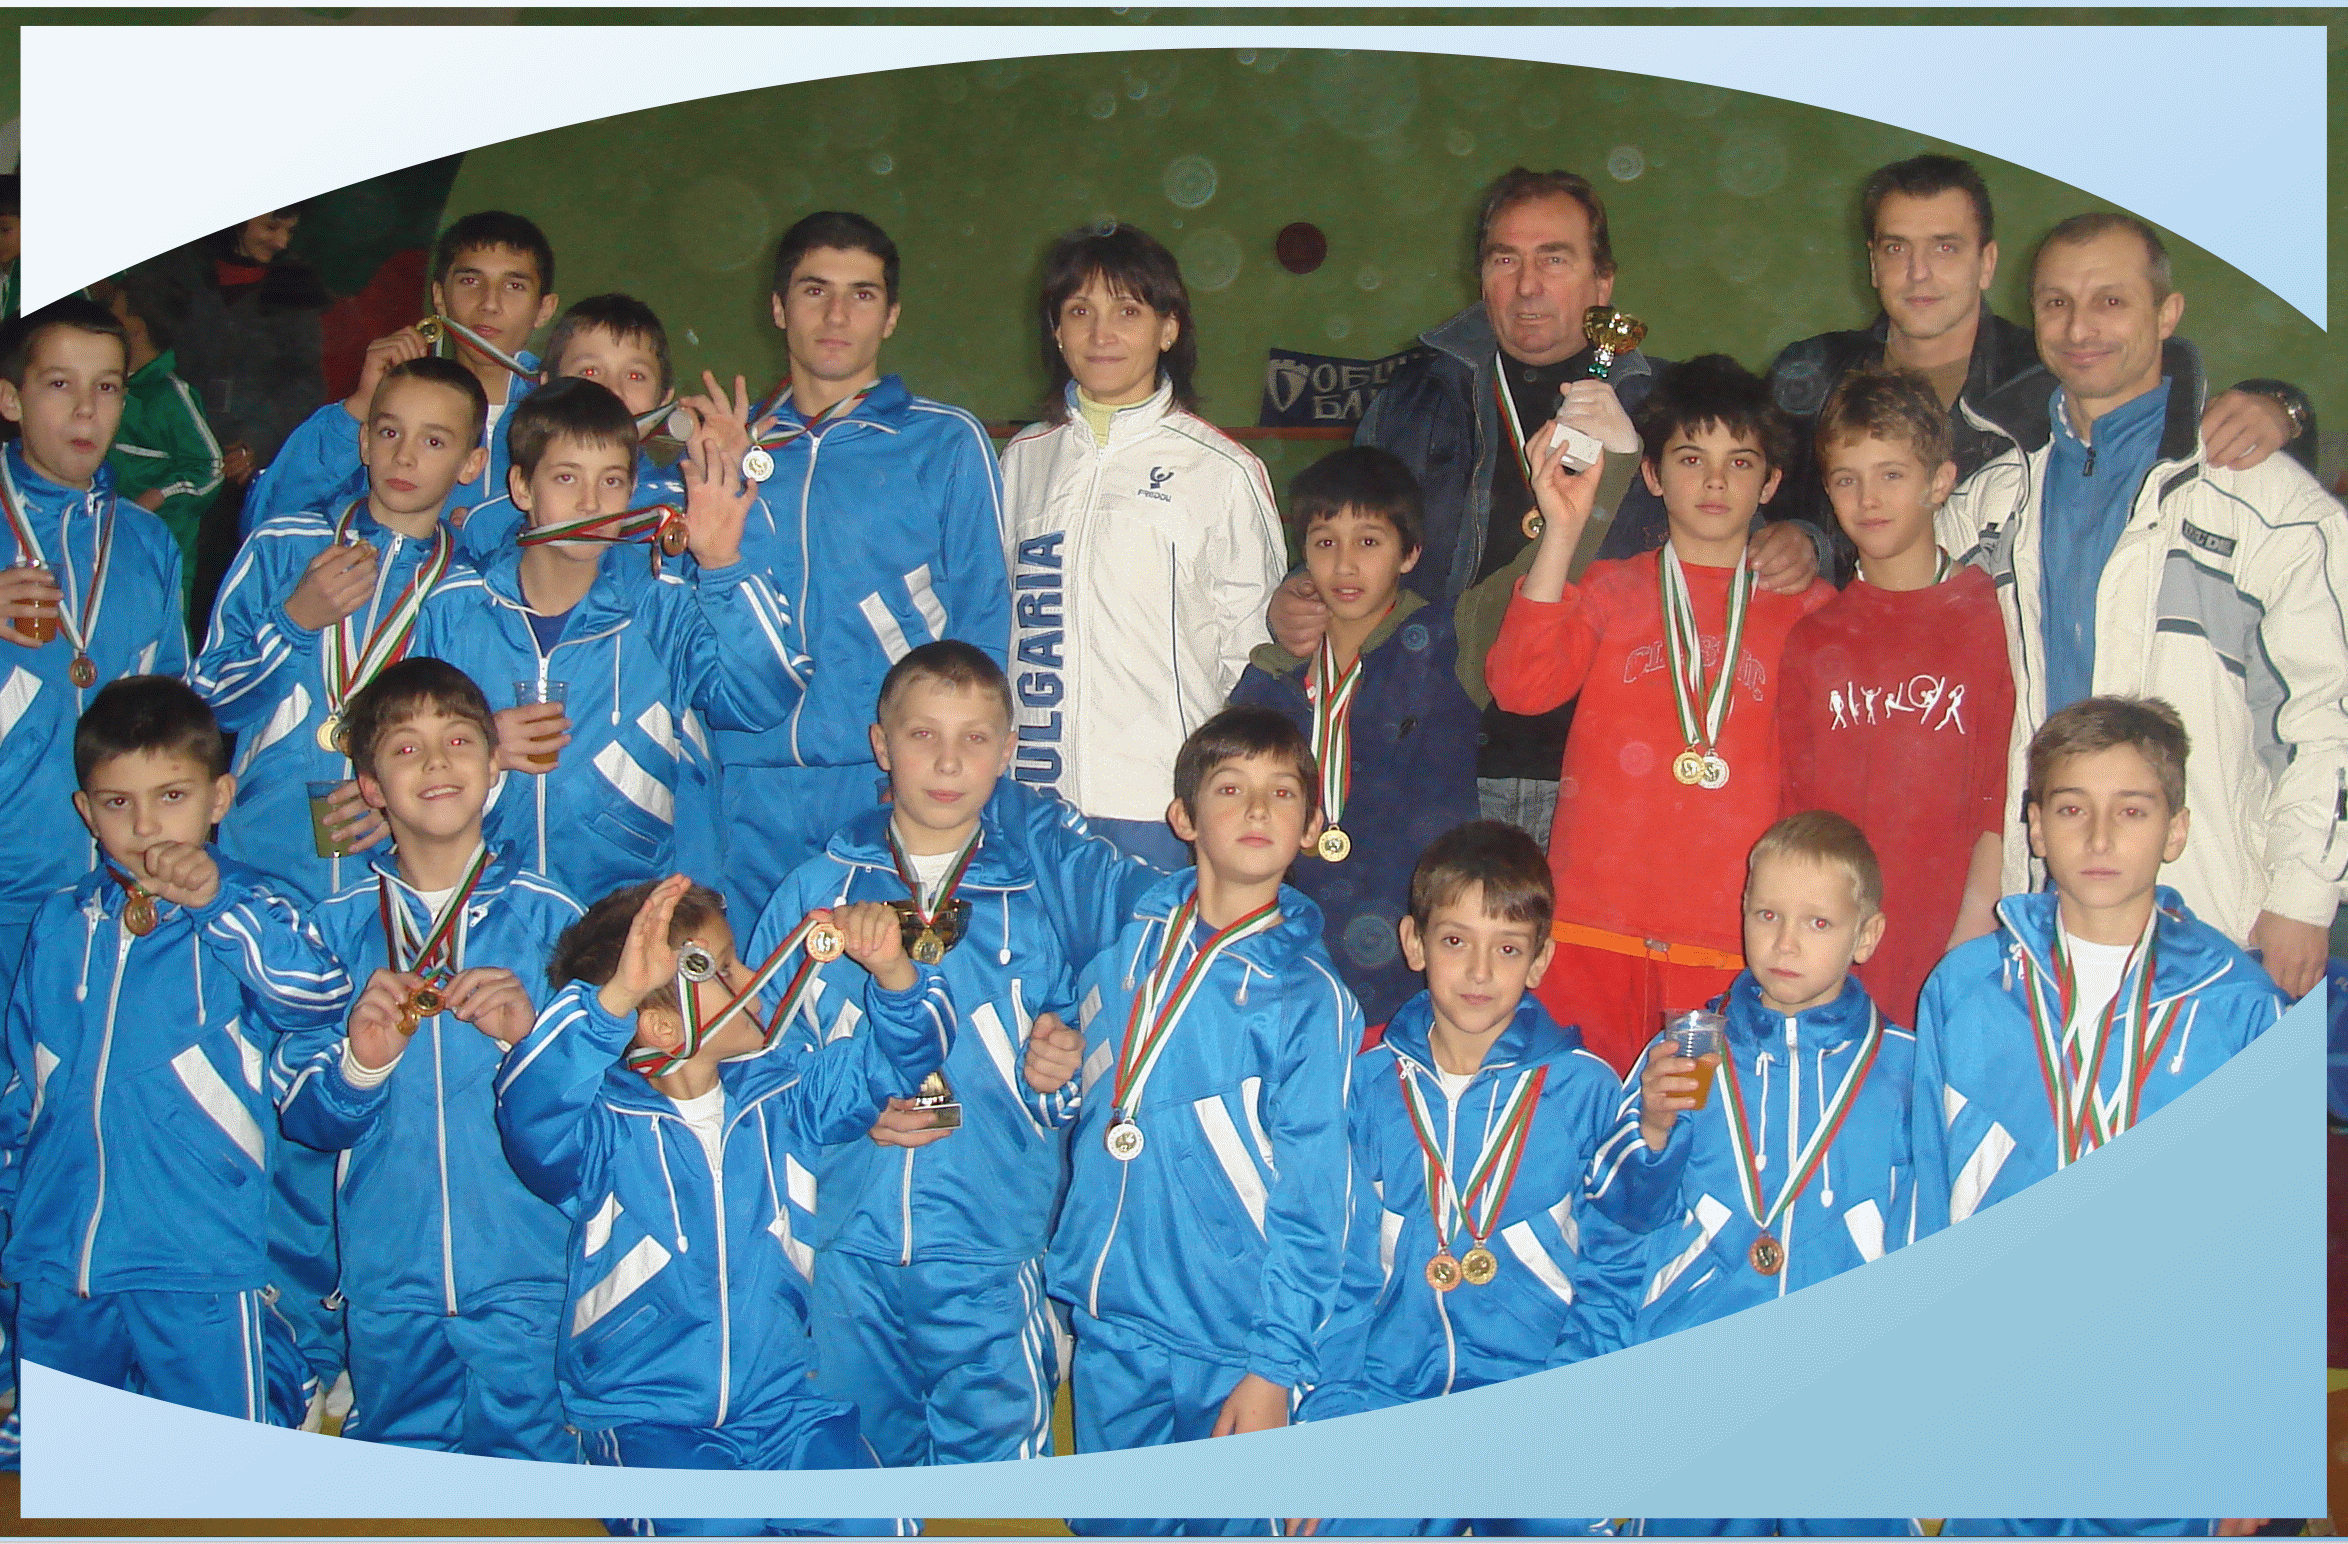 Gymnastics club Levski Sofia